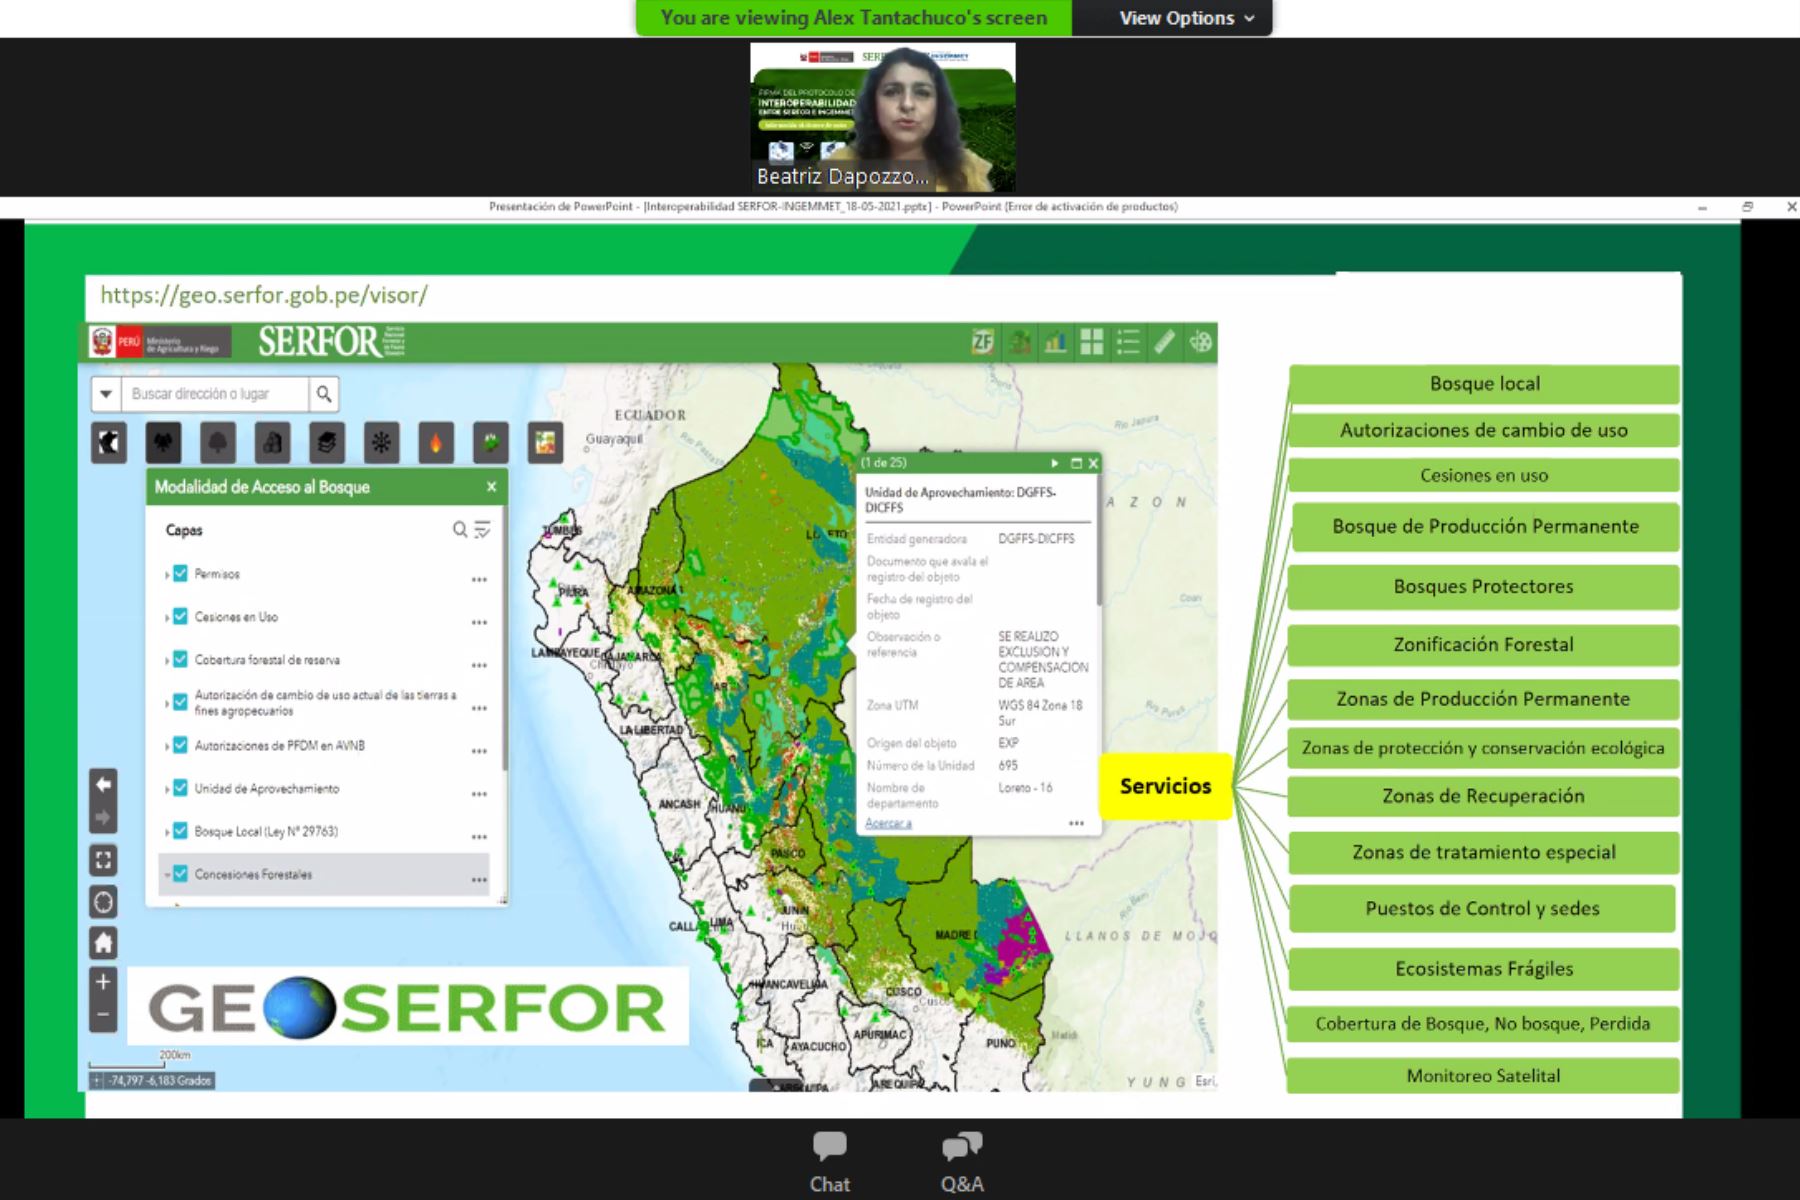 La interoperabilidad asegura la calidad y disponibilidad de la información geográfica para la gestión de los recursos forestales y de fauna silvestre. Foto: ANDINA/Serfor